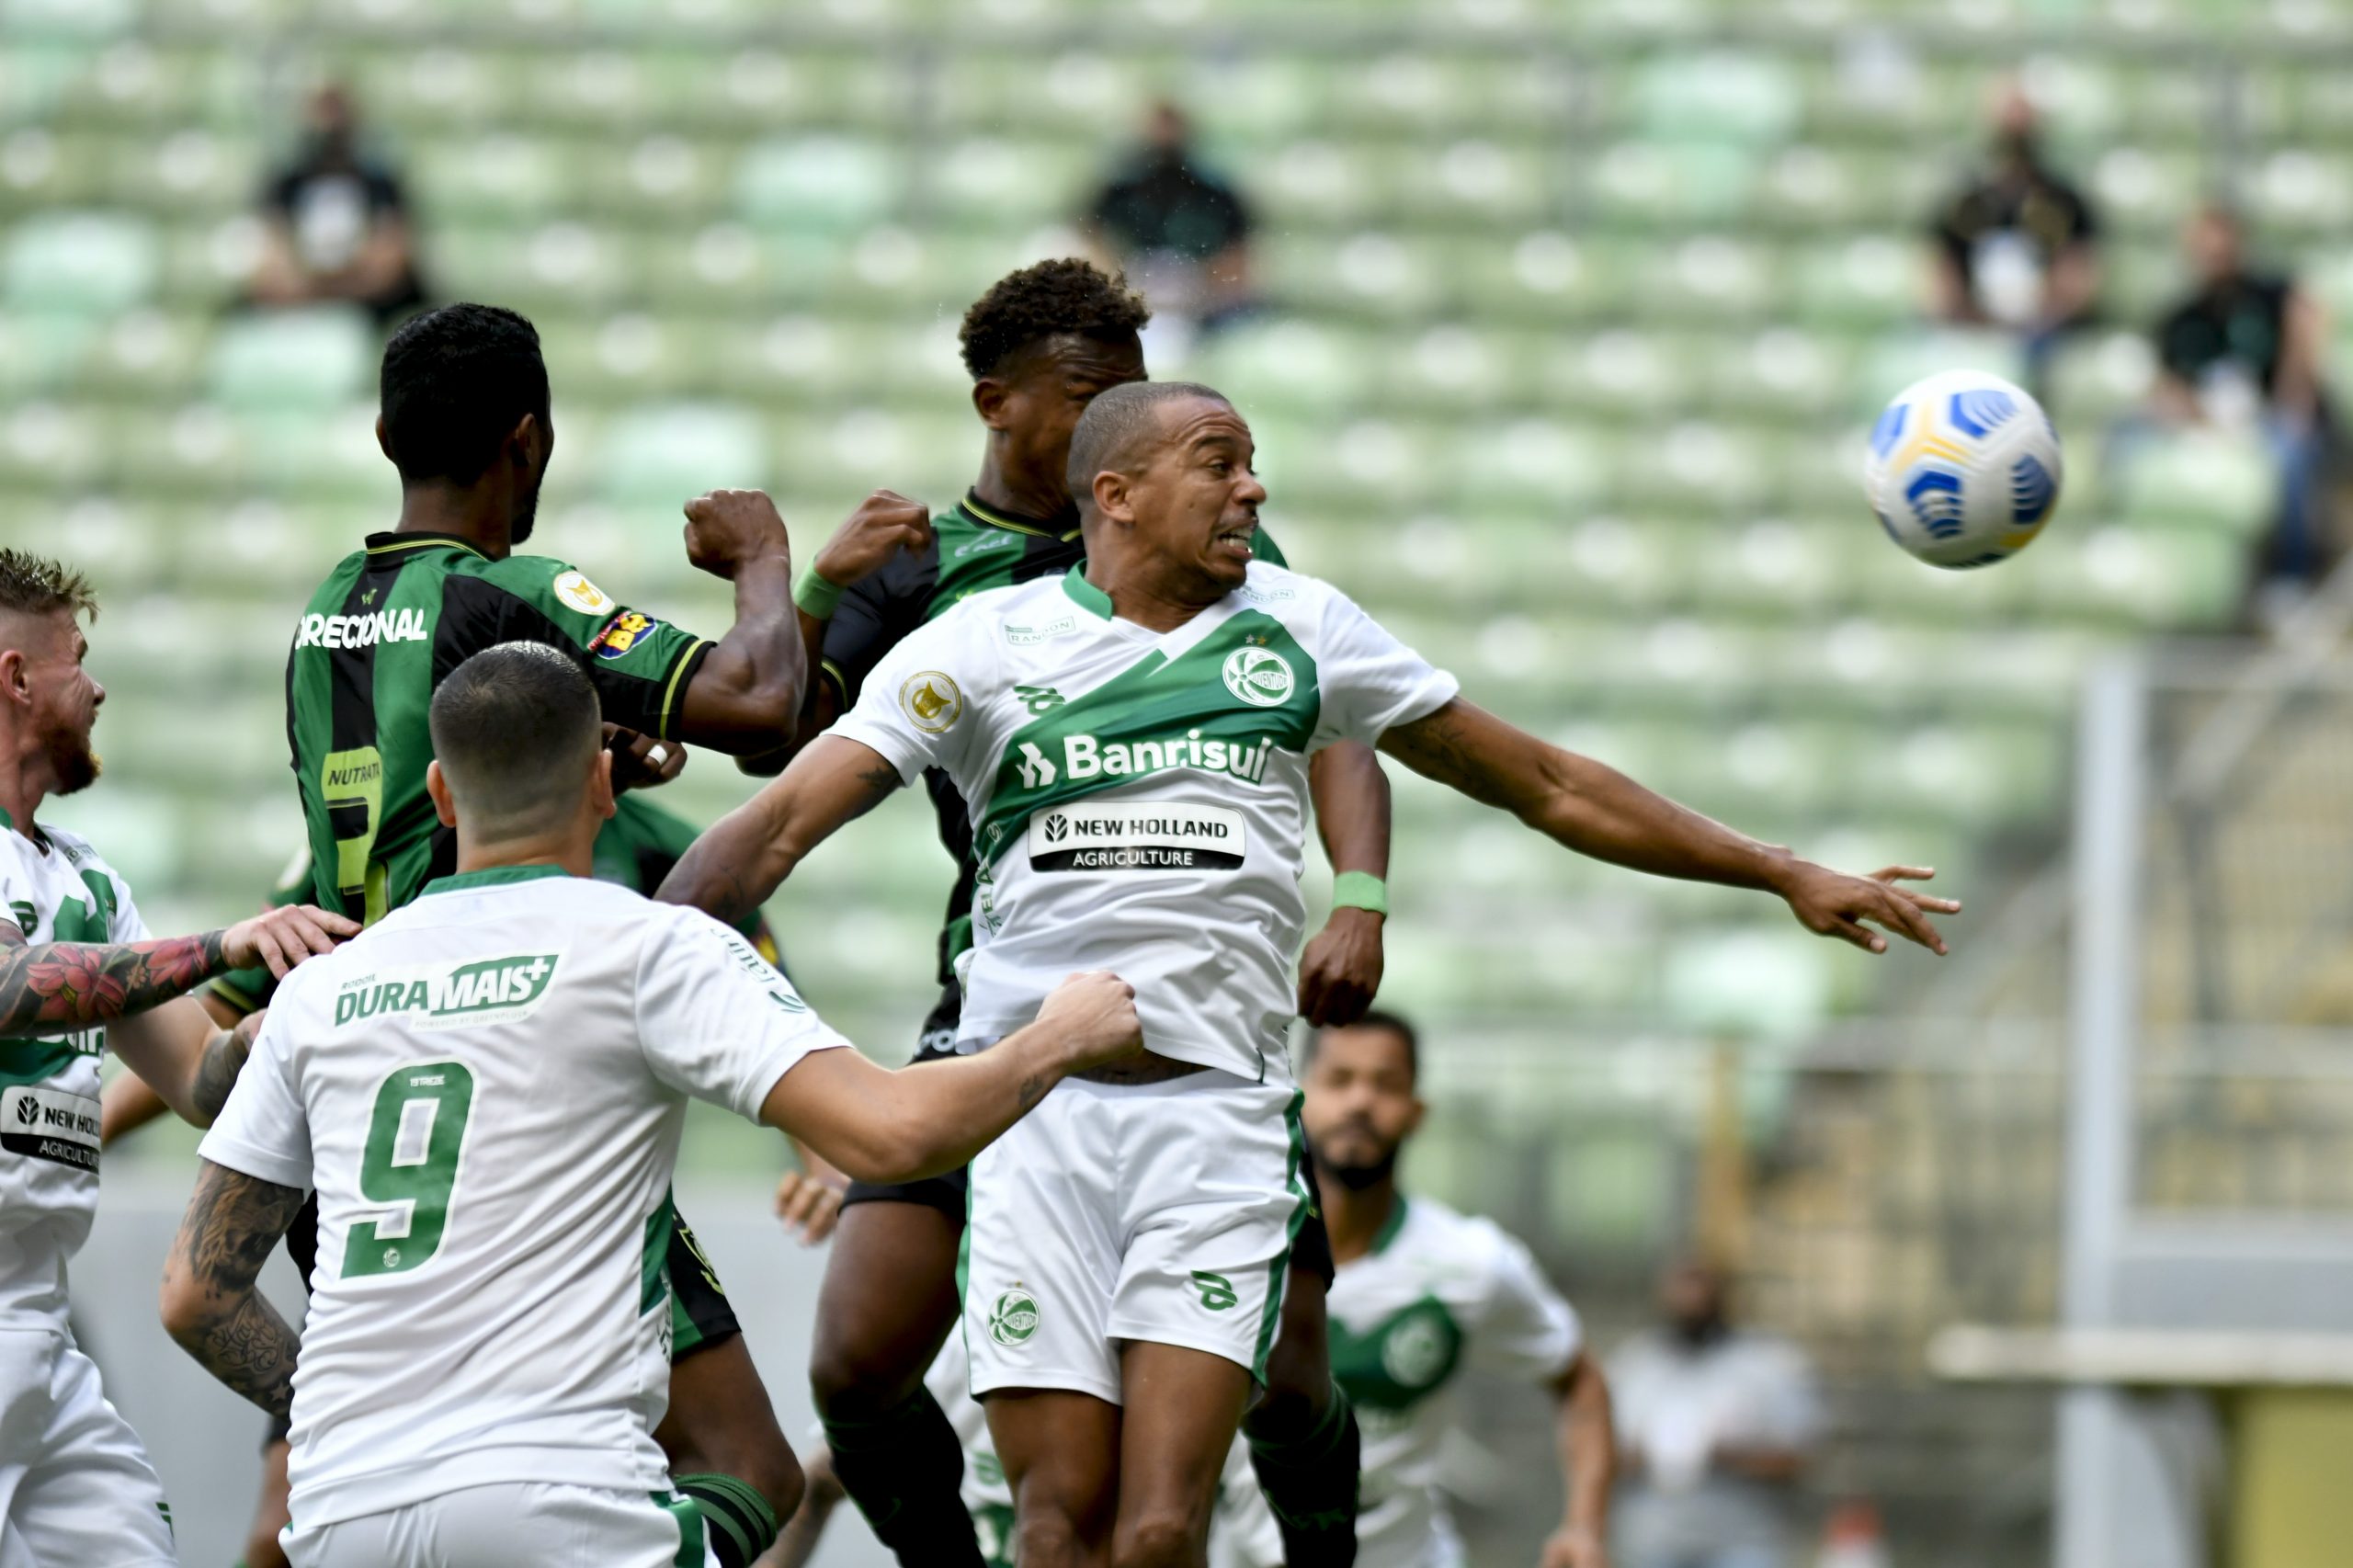 Executivo de futebol do Juventude lamenta empate com América-MG: 'A vitória estava na nossa mão'